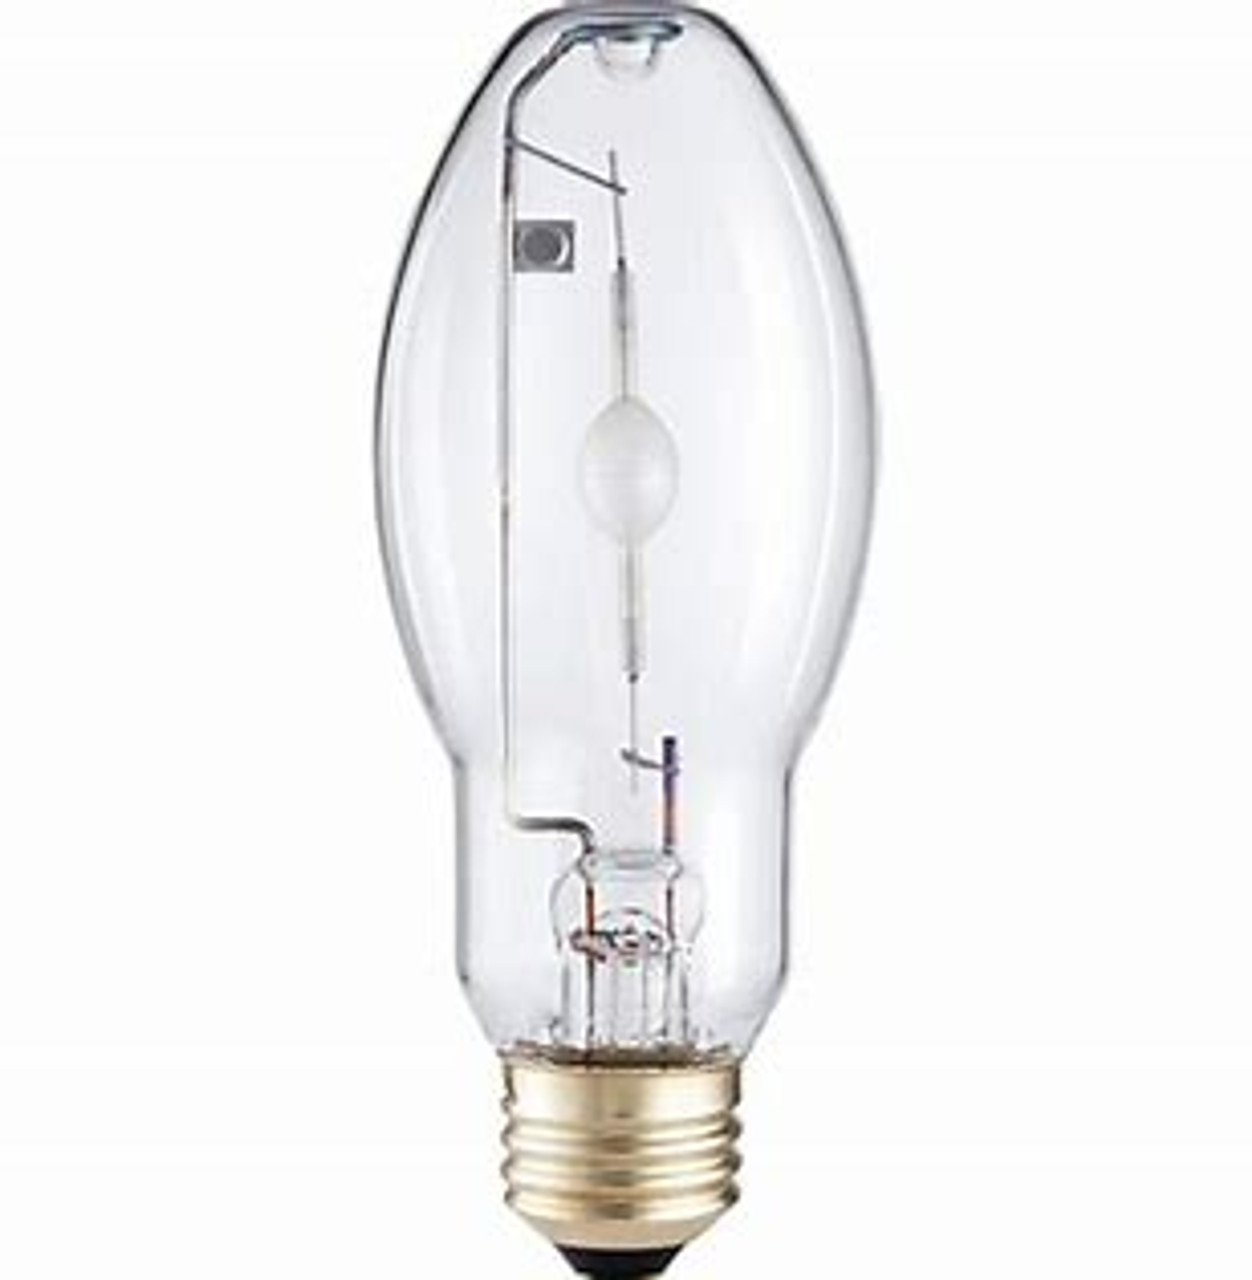 Onderdrukker lenen Overname Philips 42988-6 100 Watt Metal Halide Lamp